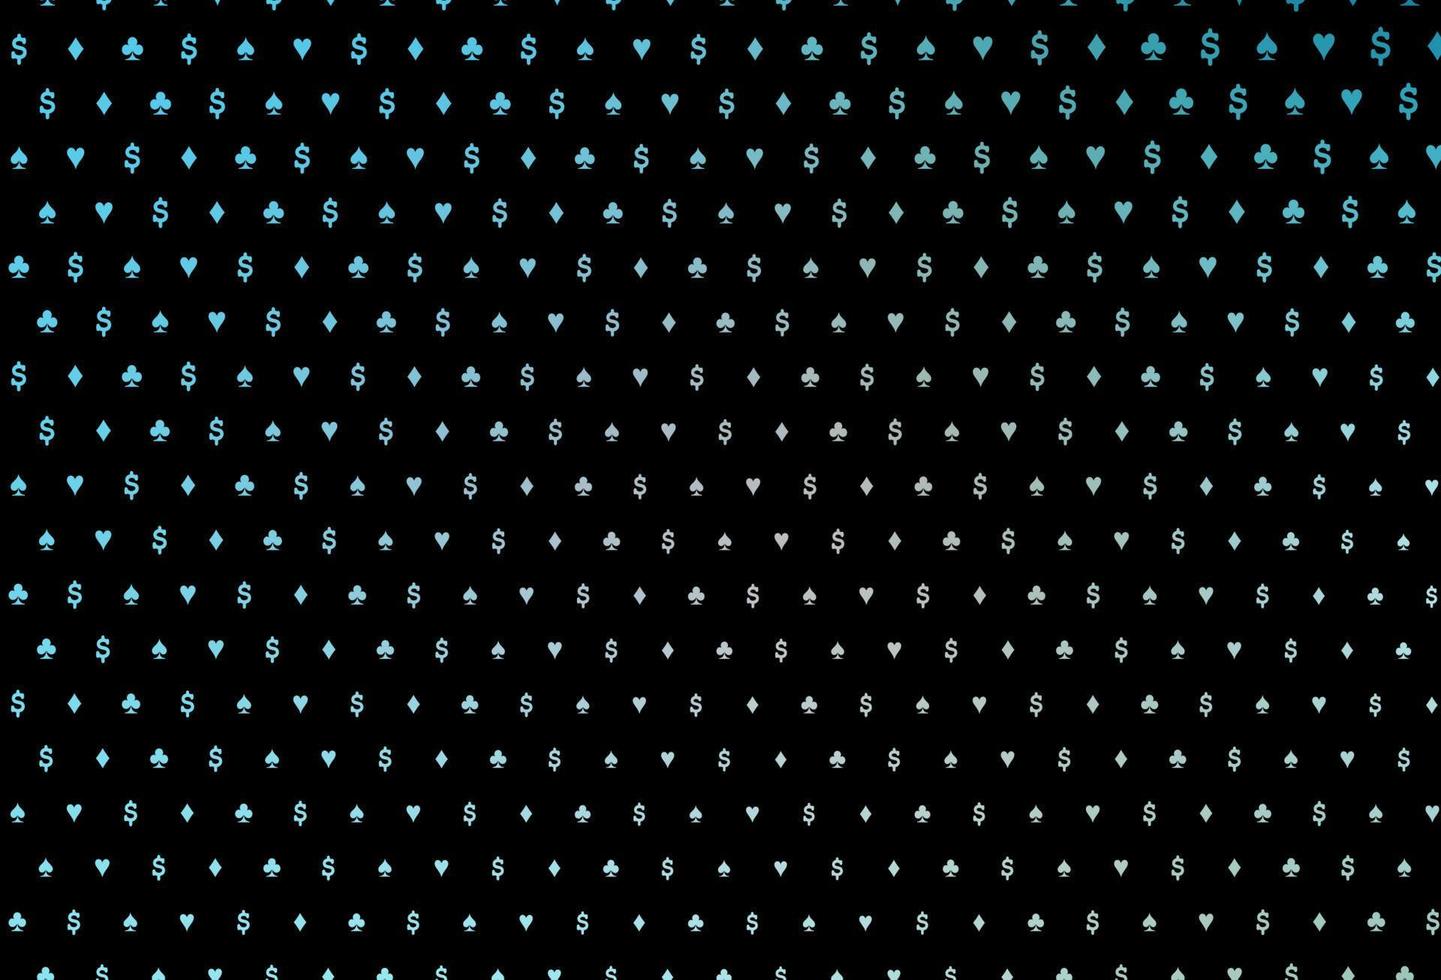 padrão de vetor azul escuro com símbolo de cartas.